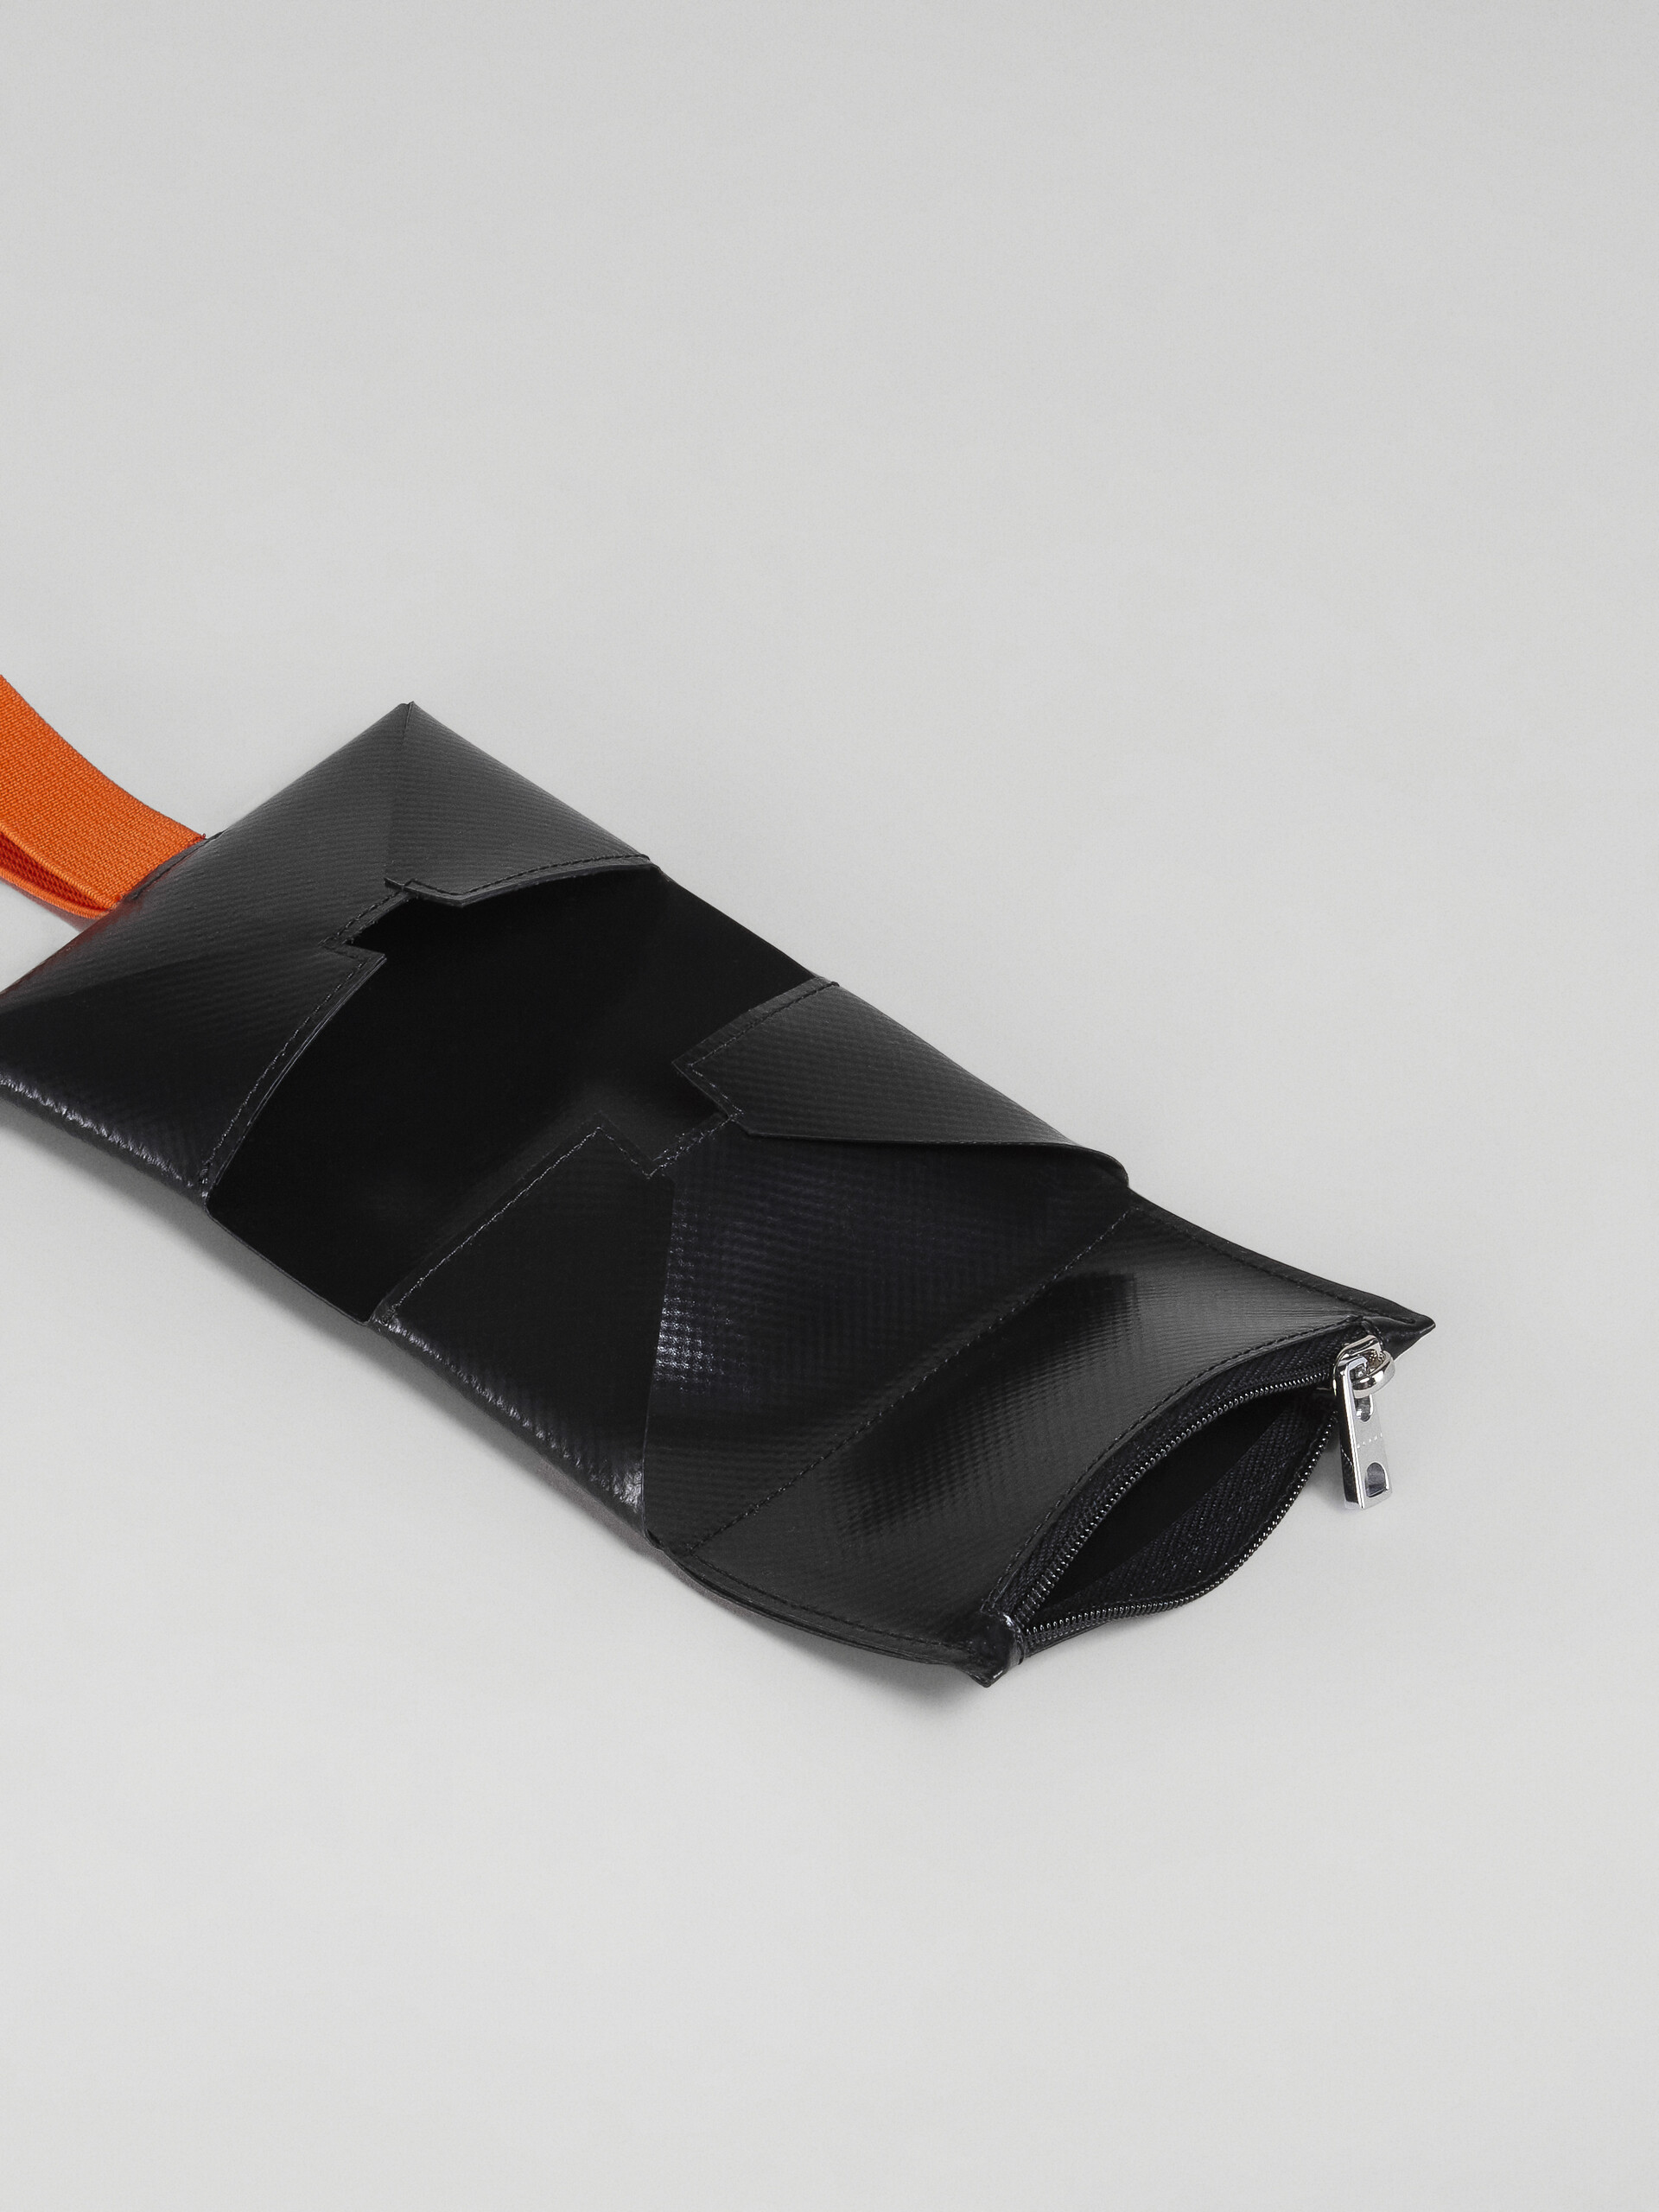 Portafoglio tri-fold in PVC nero e arancio - Portafogli - Image 2